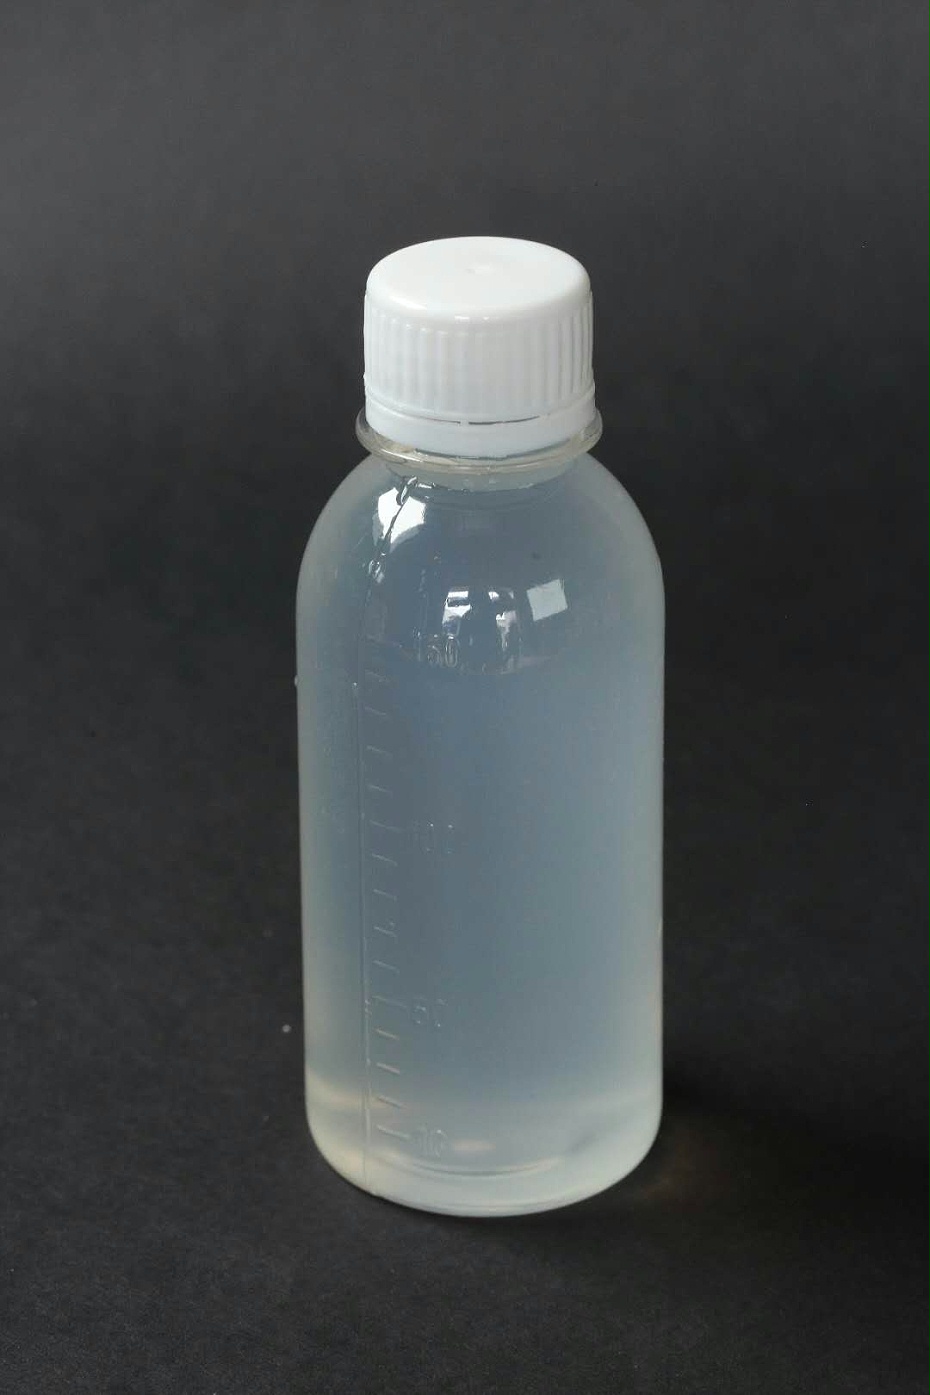 印染废水脱色剂制备方法